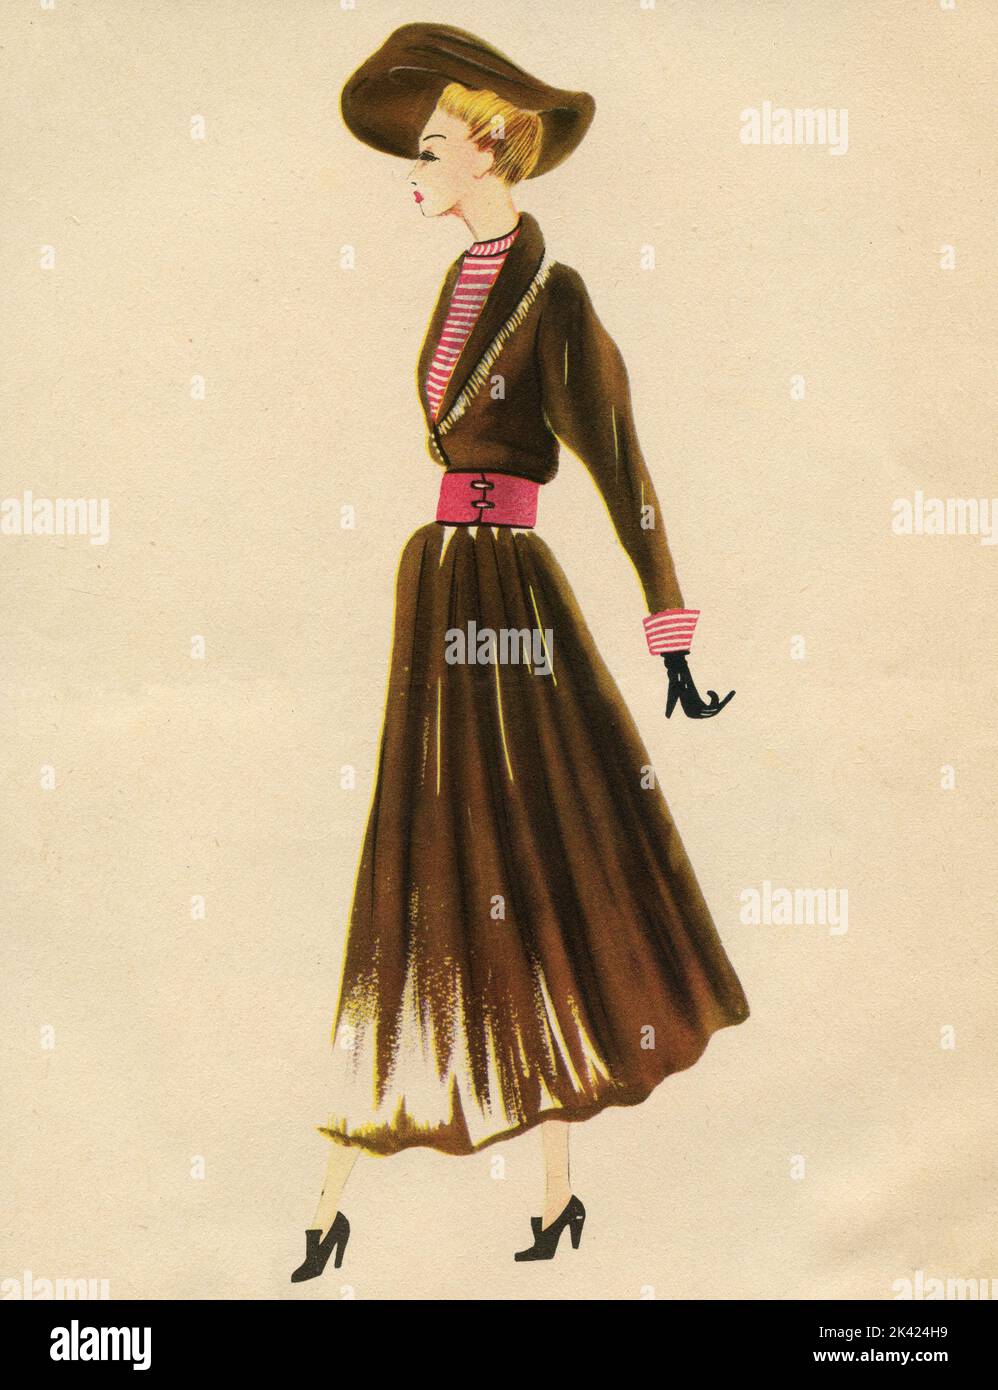 Femme dessin d'illustration de mode: Croquis de vêtements et accessoires, Italie 1940s Banque D'Images